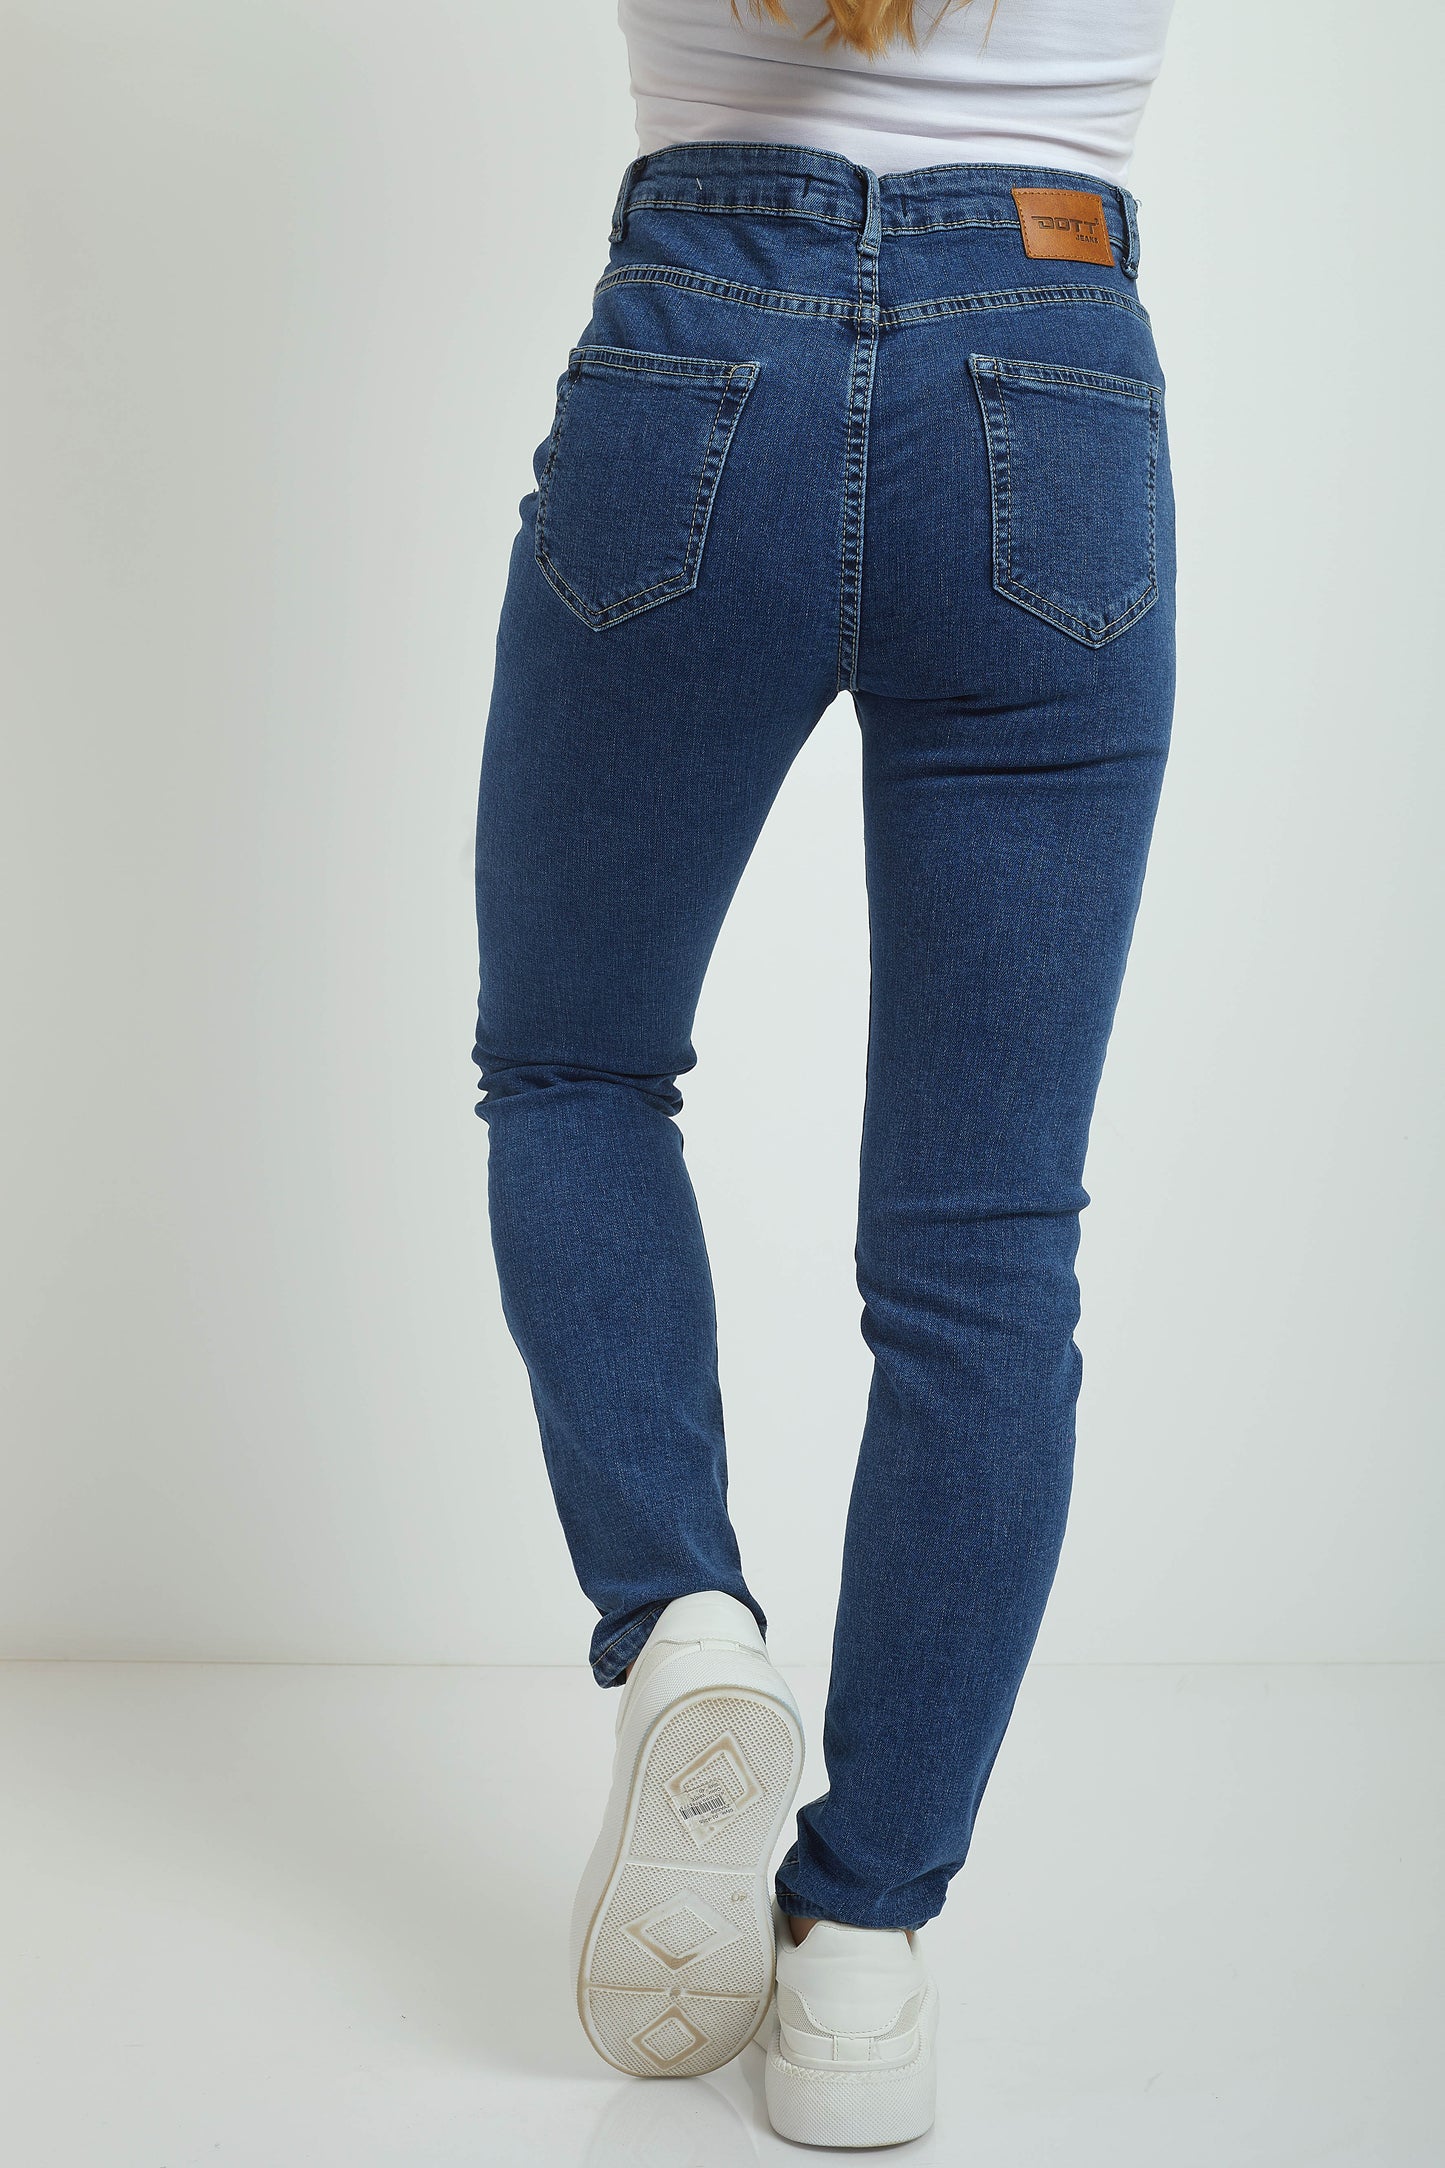 Jeans - High Waist